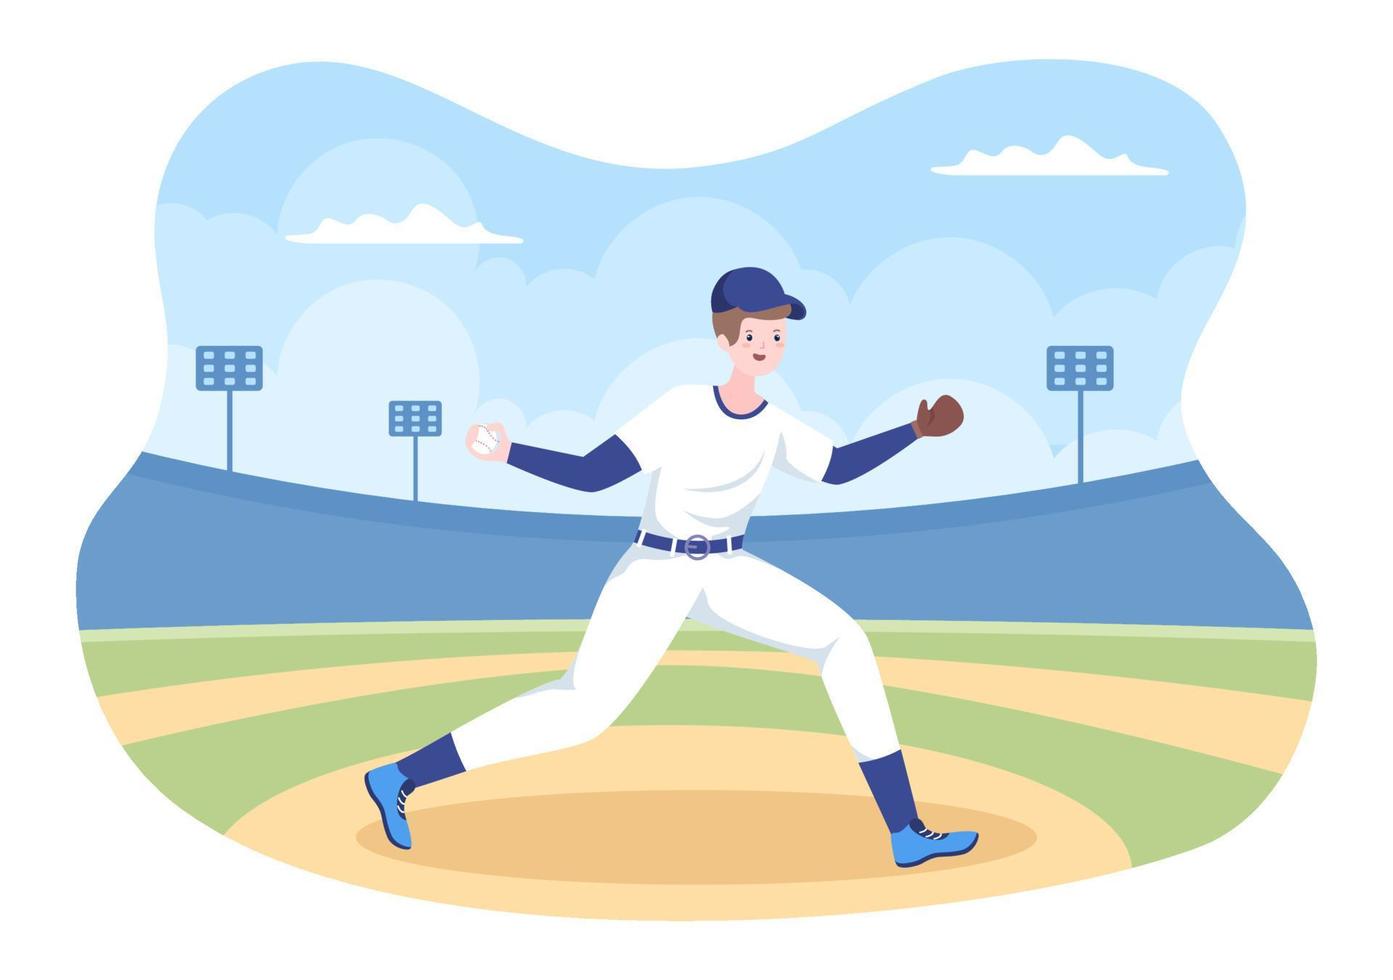 baseballspelare sporter som kastar, fångar eller slår en boll med fladdermöss och handskar i uniform på domstolsstadion i platt tecknad illustration vektor